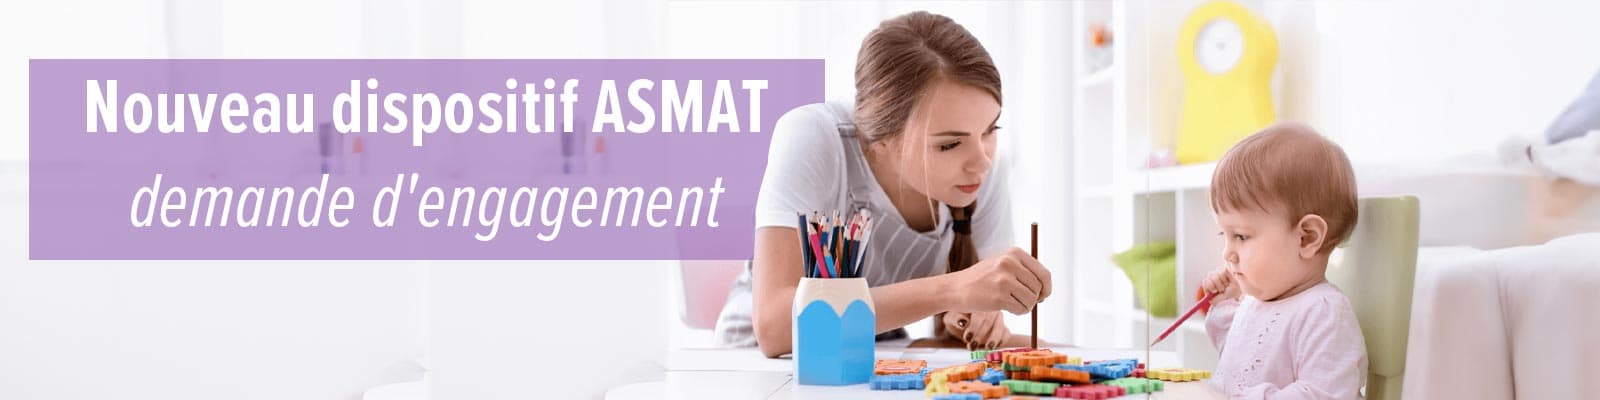 Nouveau dispositif AMSAT - demande d'engagement